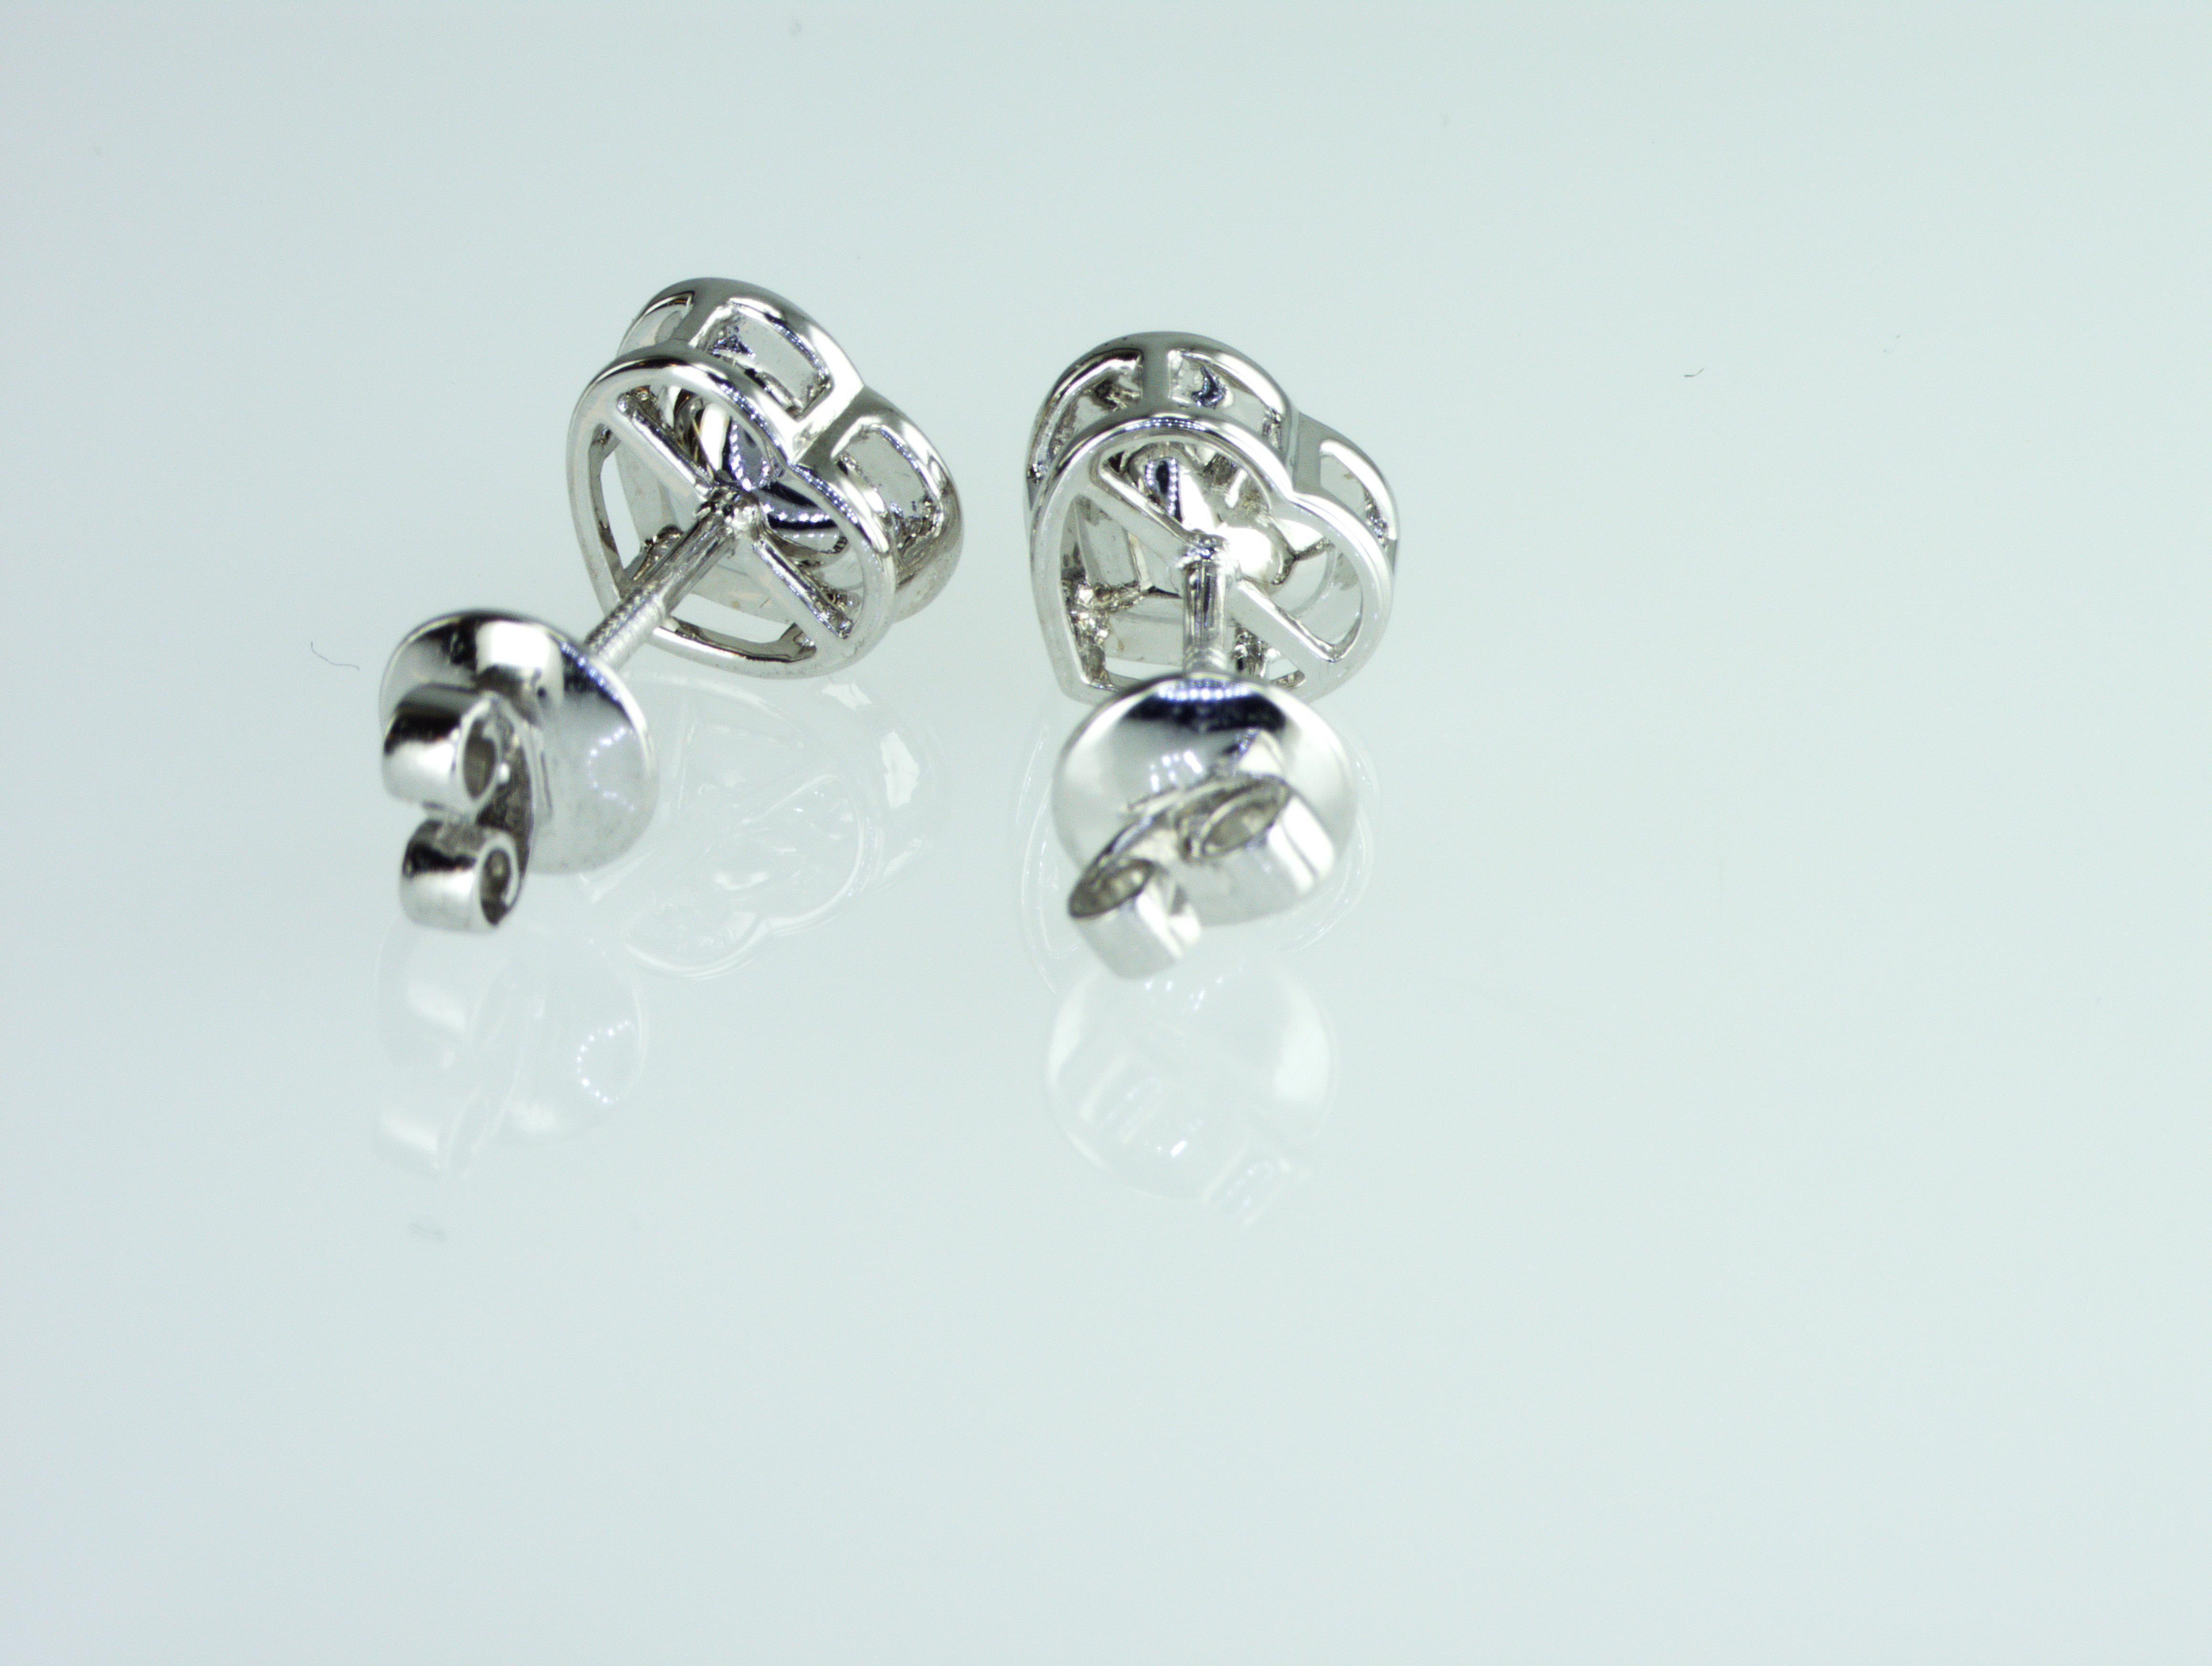 Modern IDL certified 1.42 carat Fancy Yellow Heart shape natural diamonds Earrings For Sale